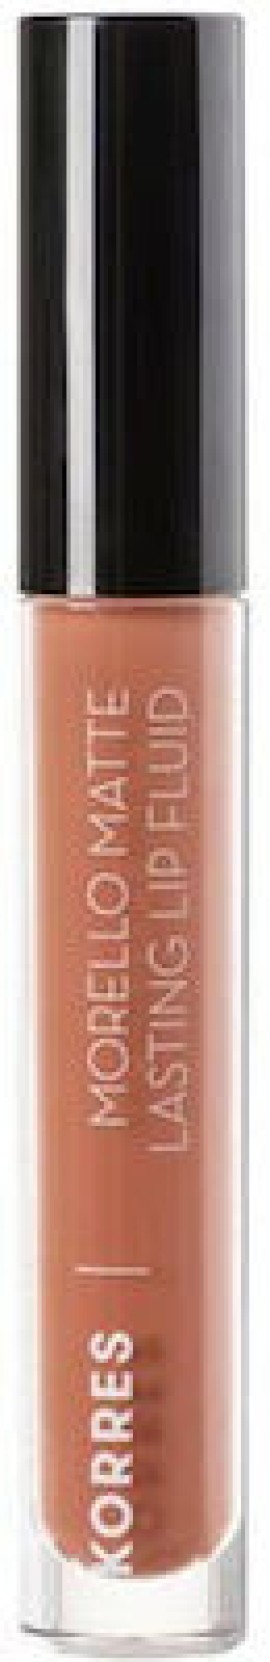 Korres Morello Matte Lasting Lip Fluid Υγρό Κραγιόν Μεγάλης Διάρκειας Για Τέλειο Ματ Αποτέλεσμα 07 Tinted Nude 3.4ml